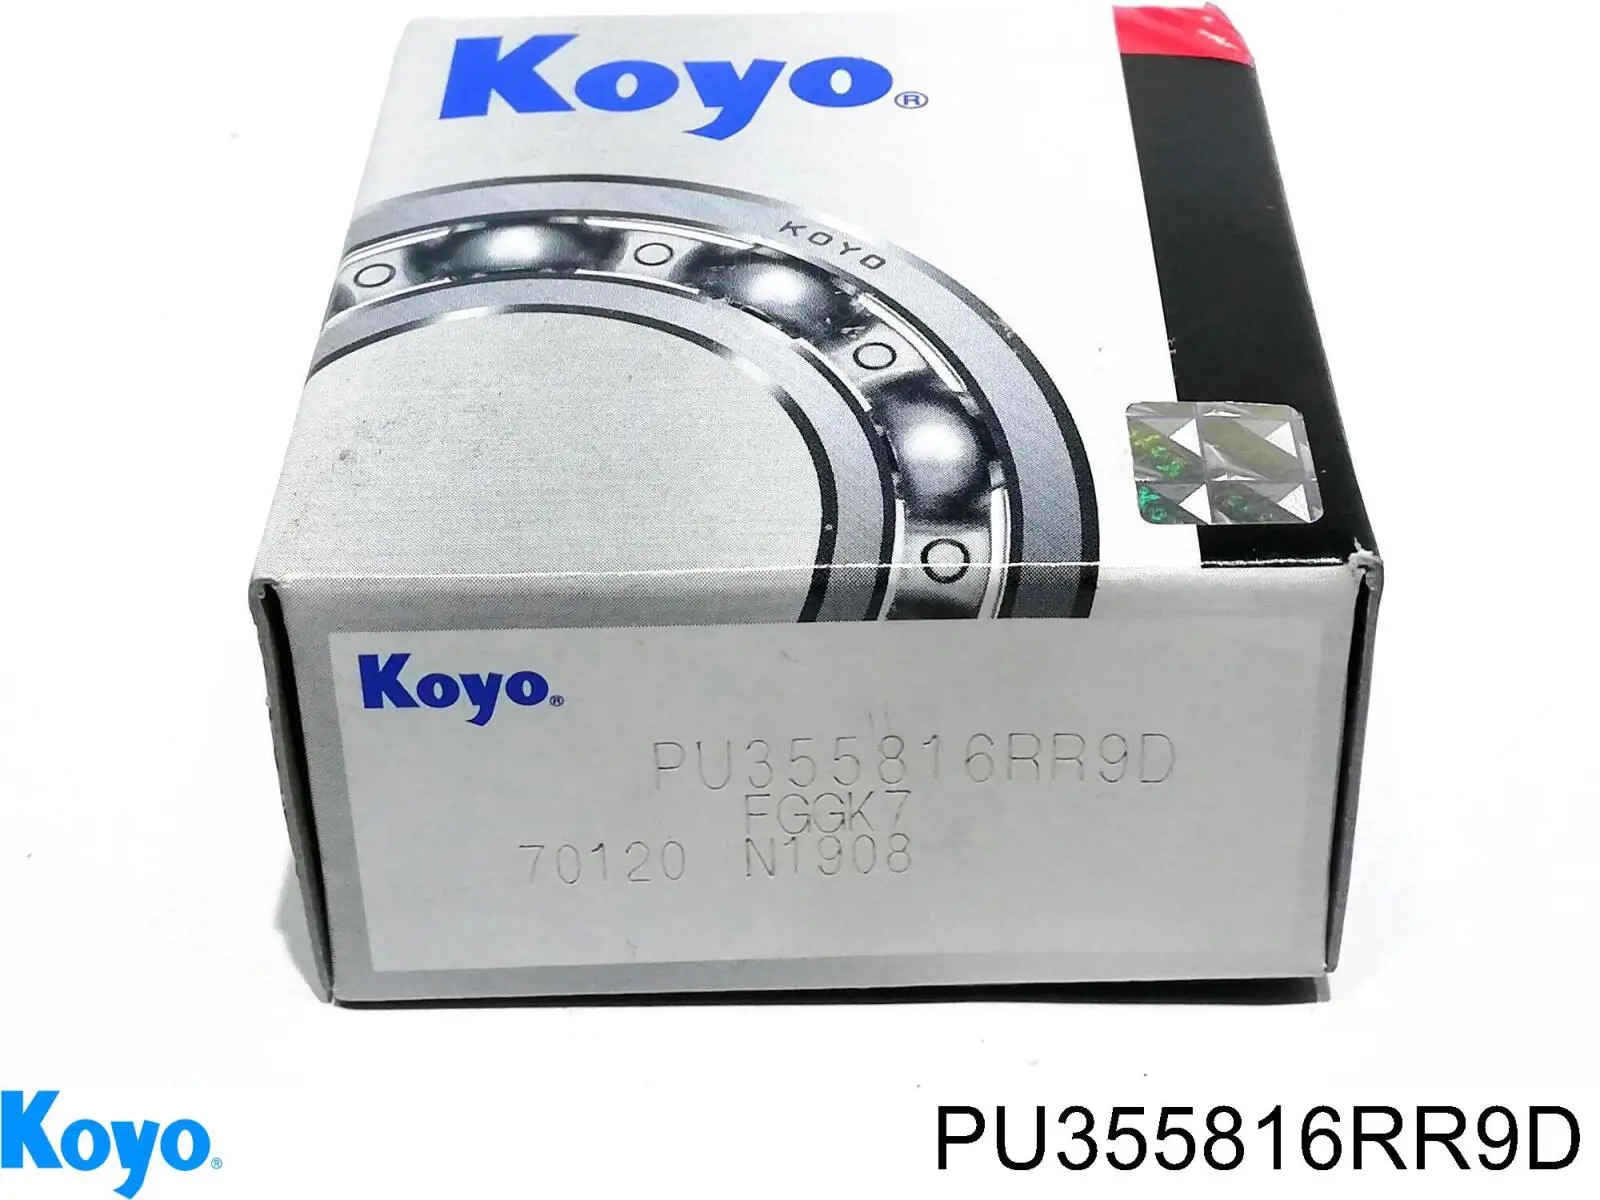 PU355816RR9D Koyo rolo parasita da correia do mecanismo de distribuição de gás